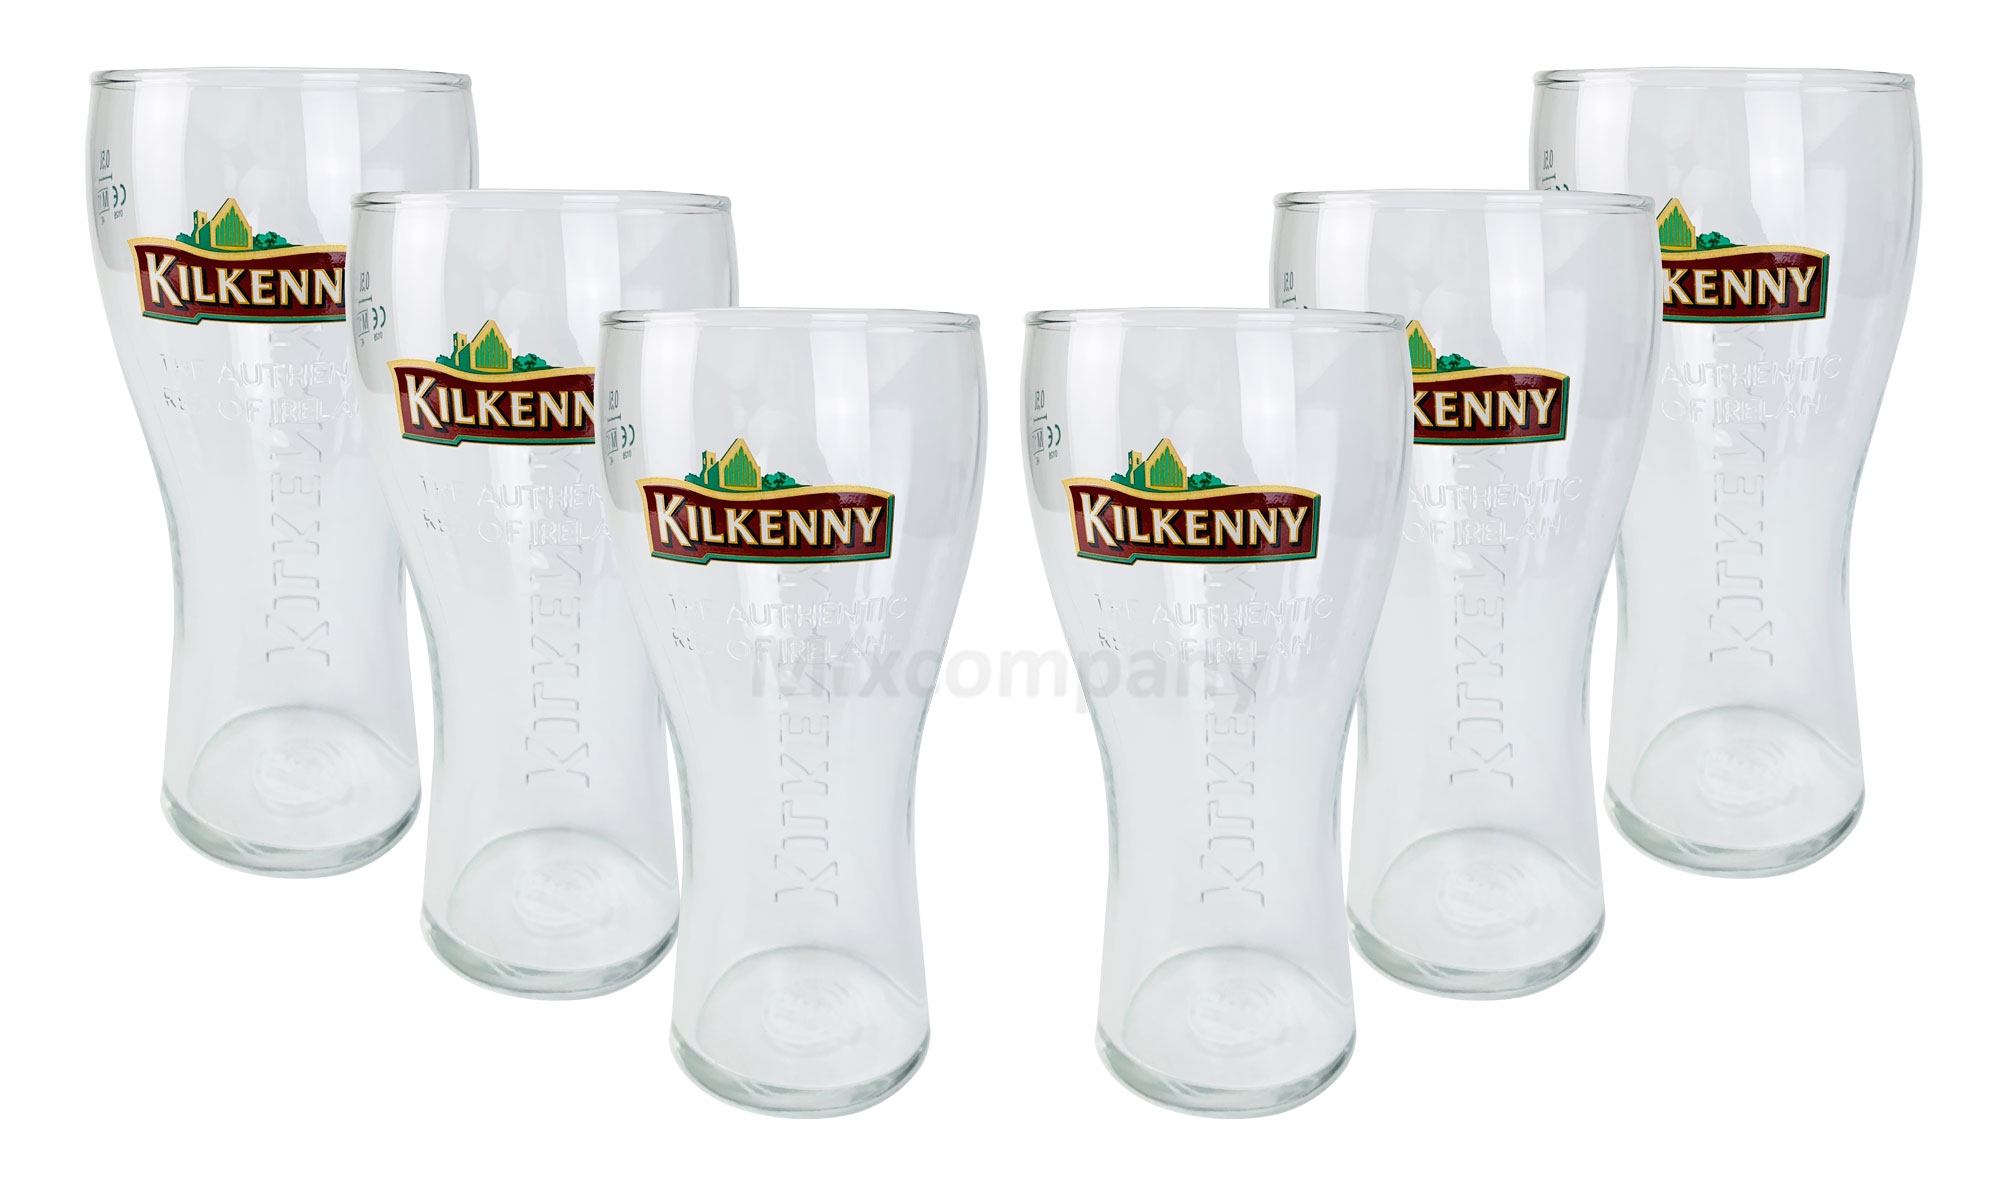 Kilkenny Bier Bierglas Glas GläserSet - 6x Biergläser 0,5l geeicht